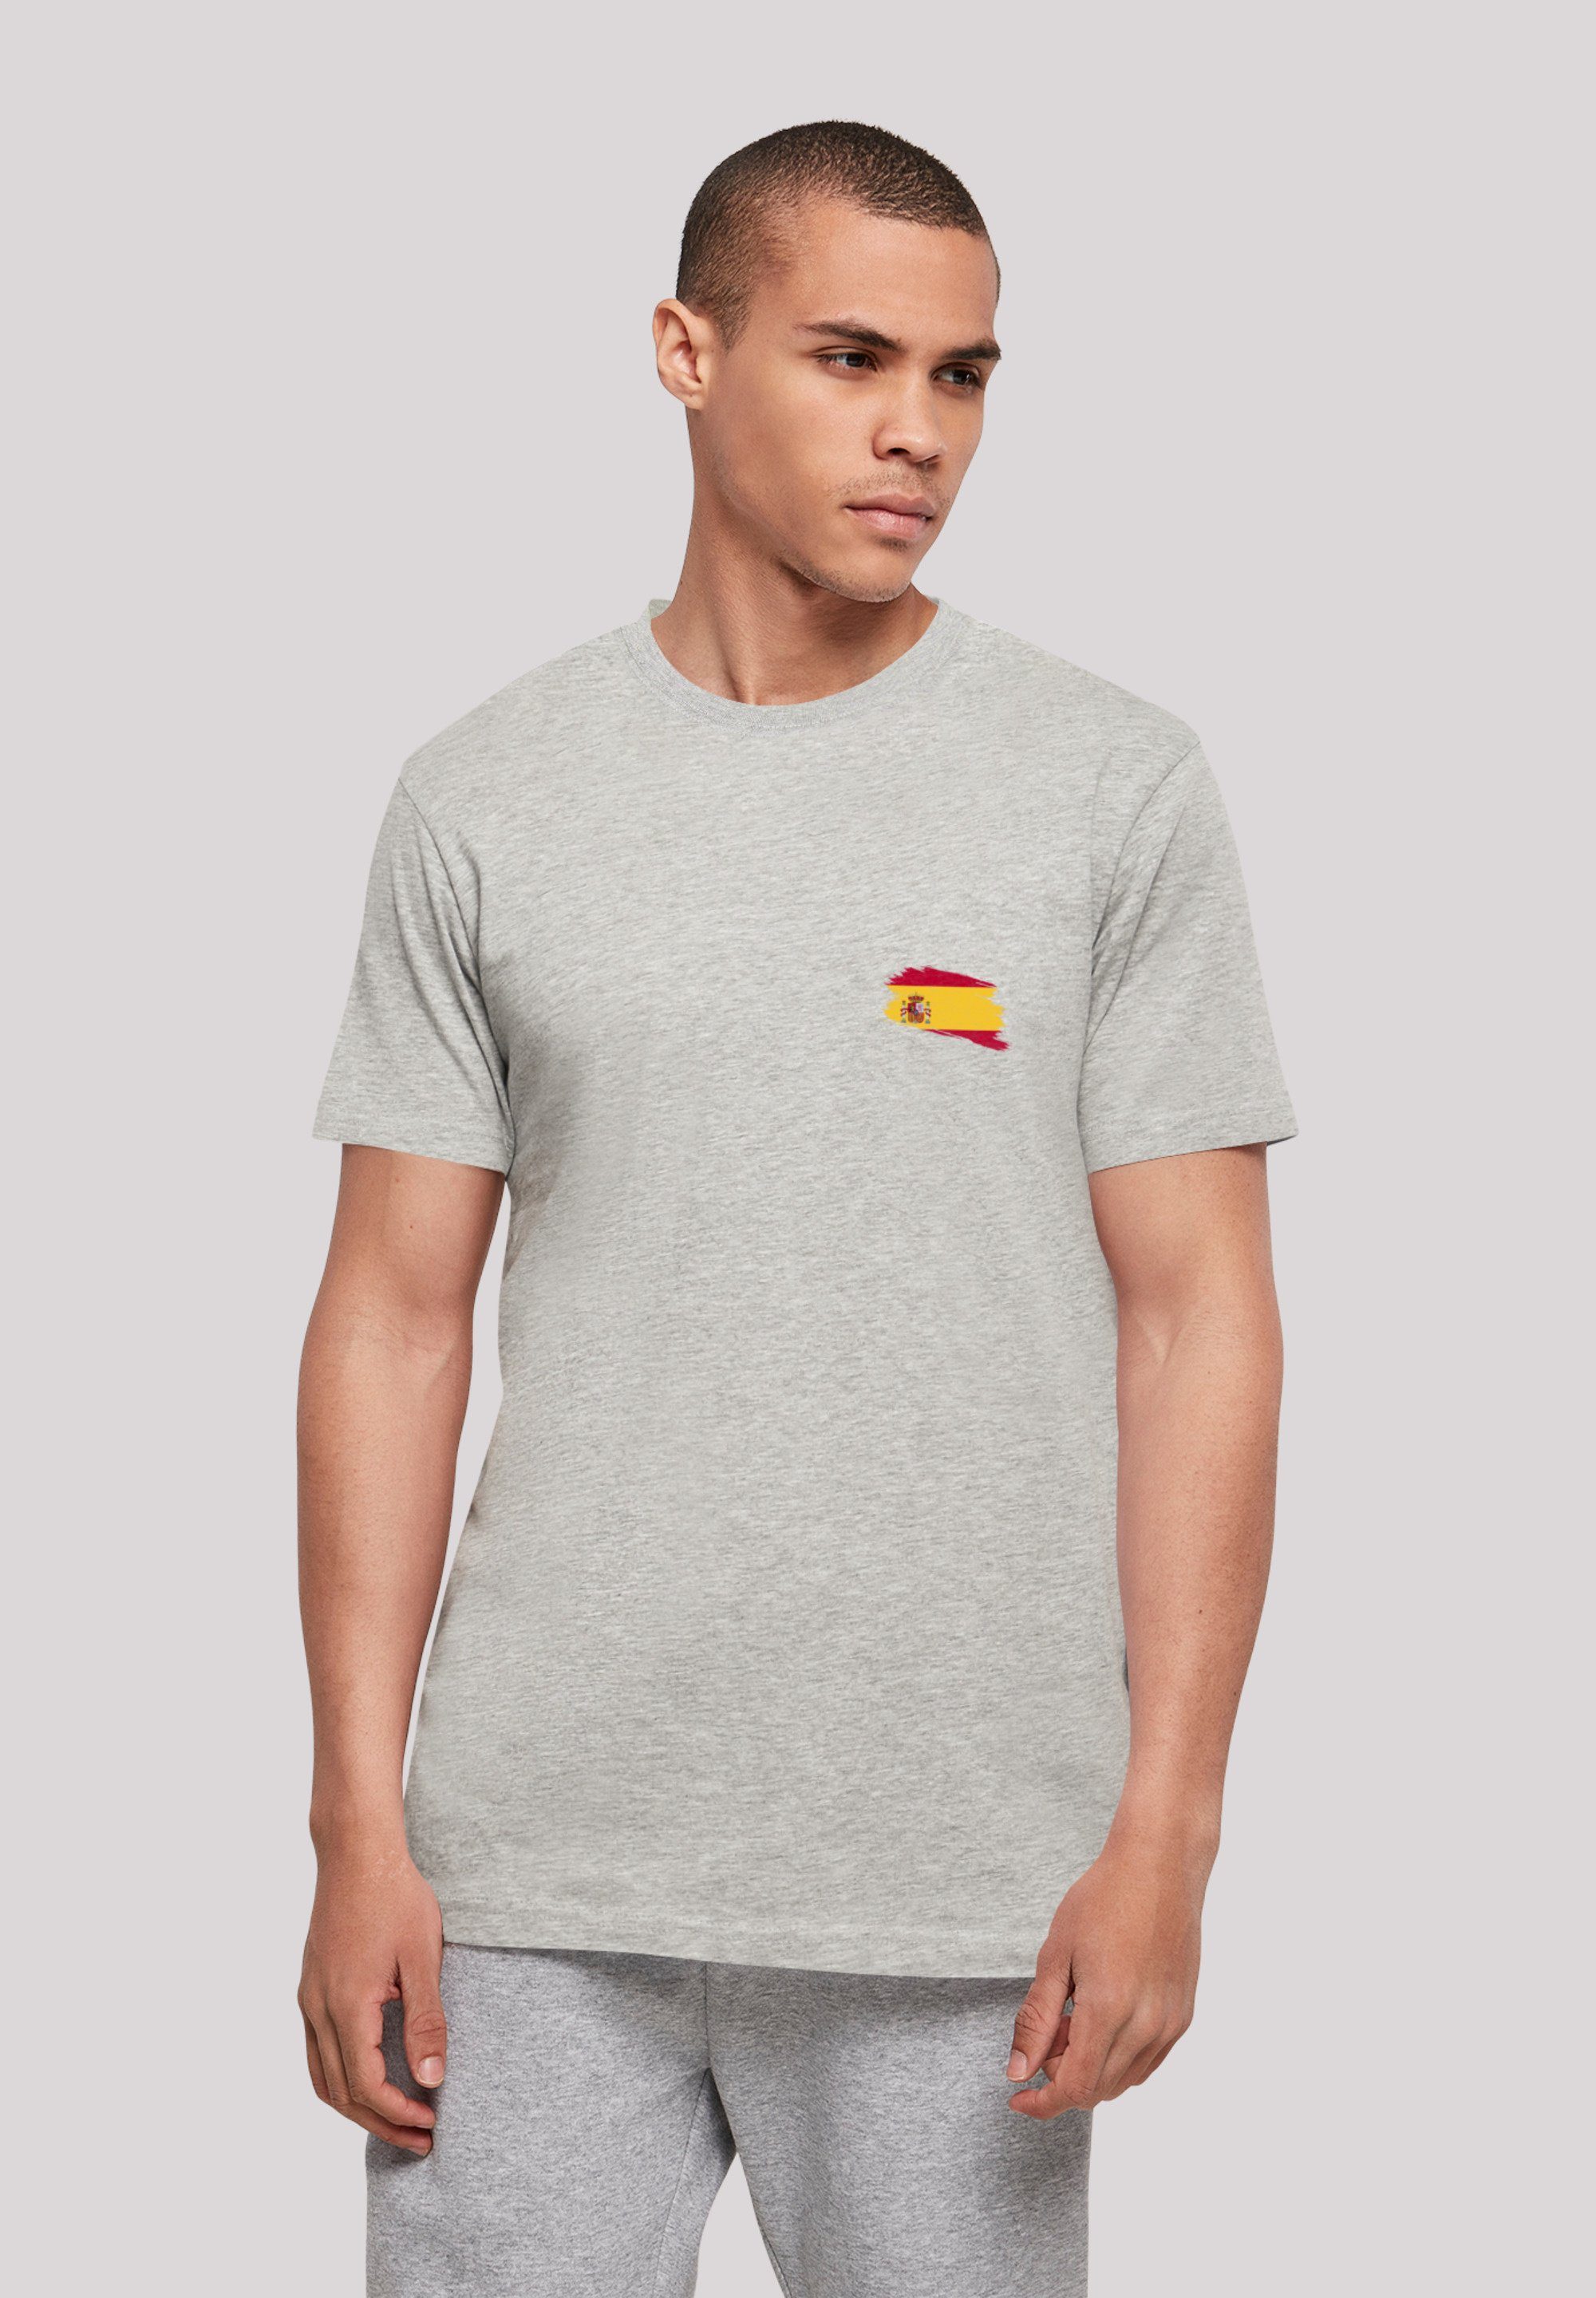 Spanien Spain T-Shirt Print F4NT4STIC Flagge